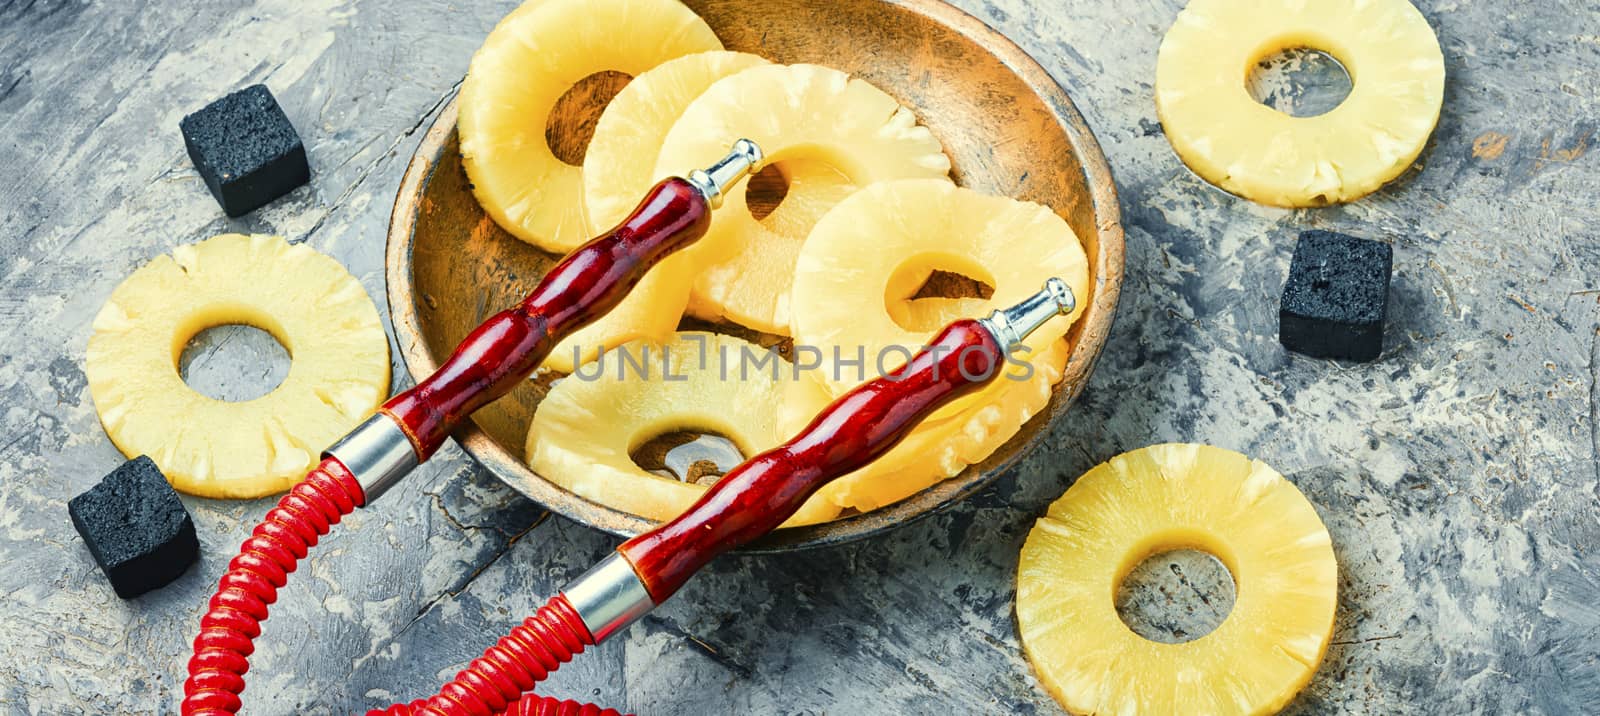 Pineapple flavored hookah. by LMykola